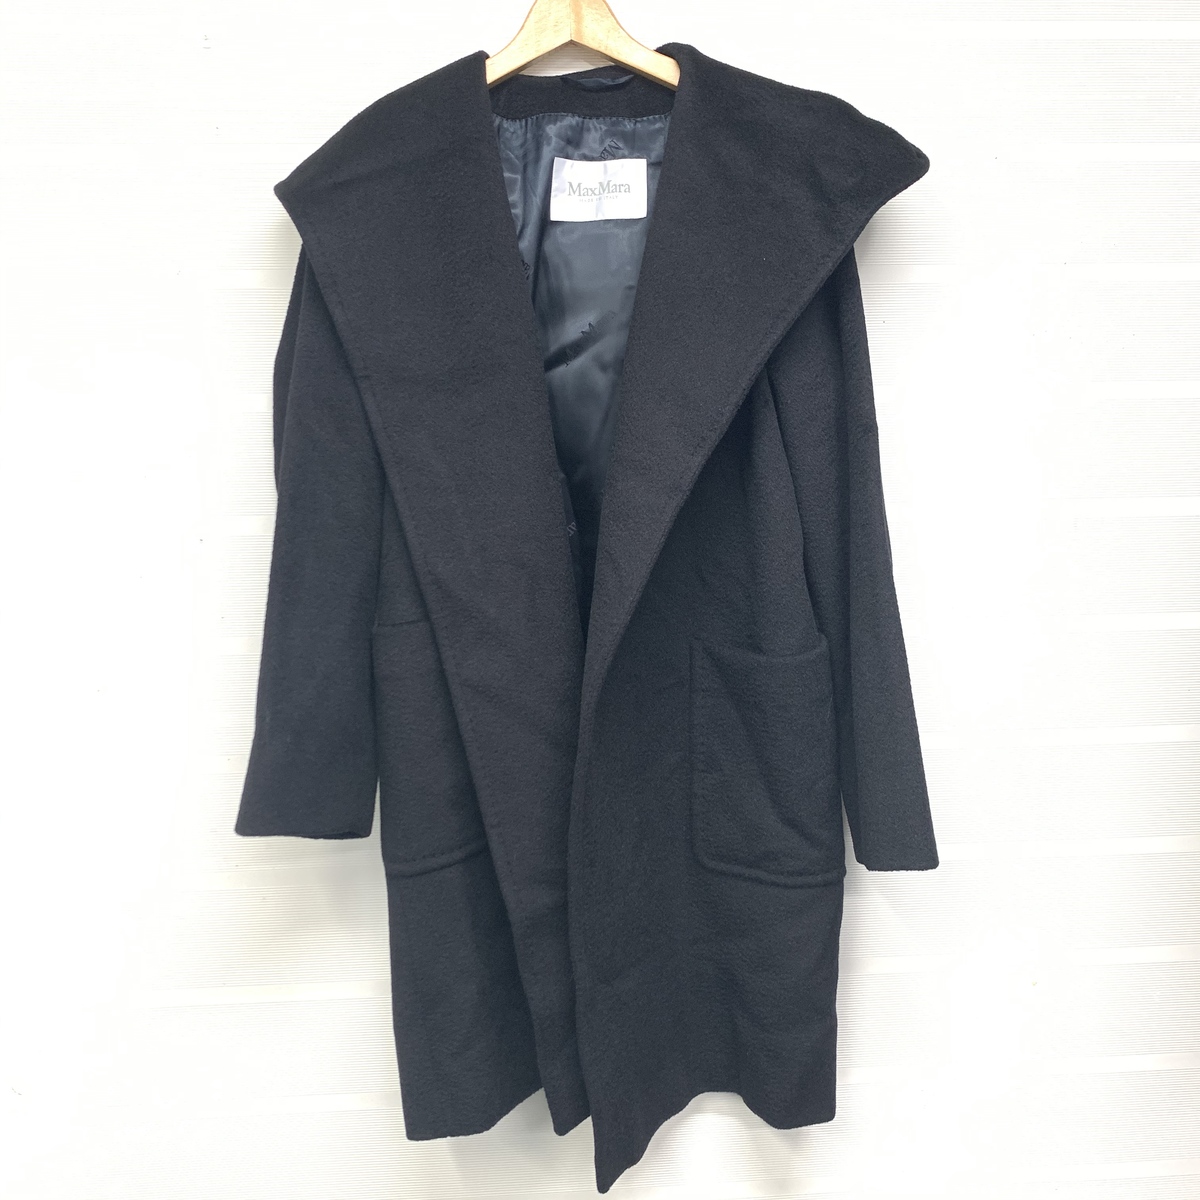 マックスマーラの洋服の正規 ブラック キャメル100% ベルト付き フーデットコートの買取実績 2019年11月3日公開情報｜ブランド品・洋服